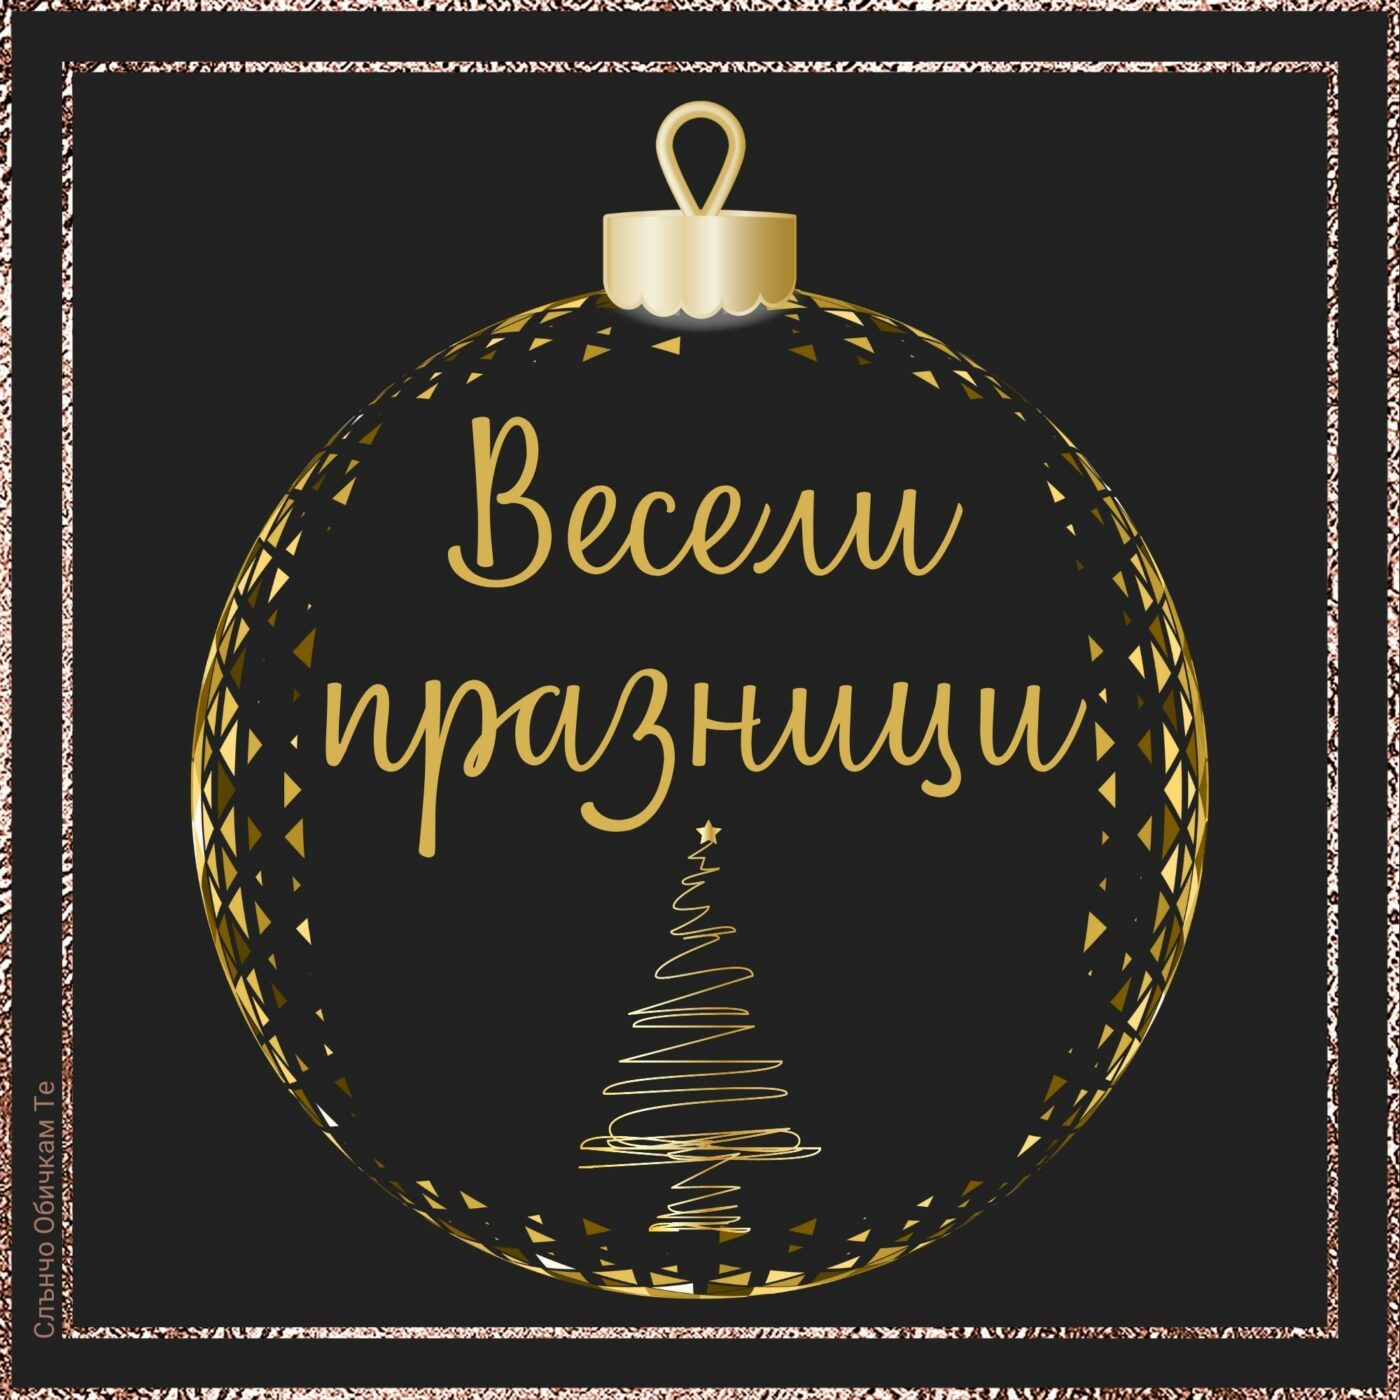 Весели празници в златиста топка - Картички за Коледа, новогодишни пожелания, честита Коледа, 2021, 2022, нова година, честита коледа